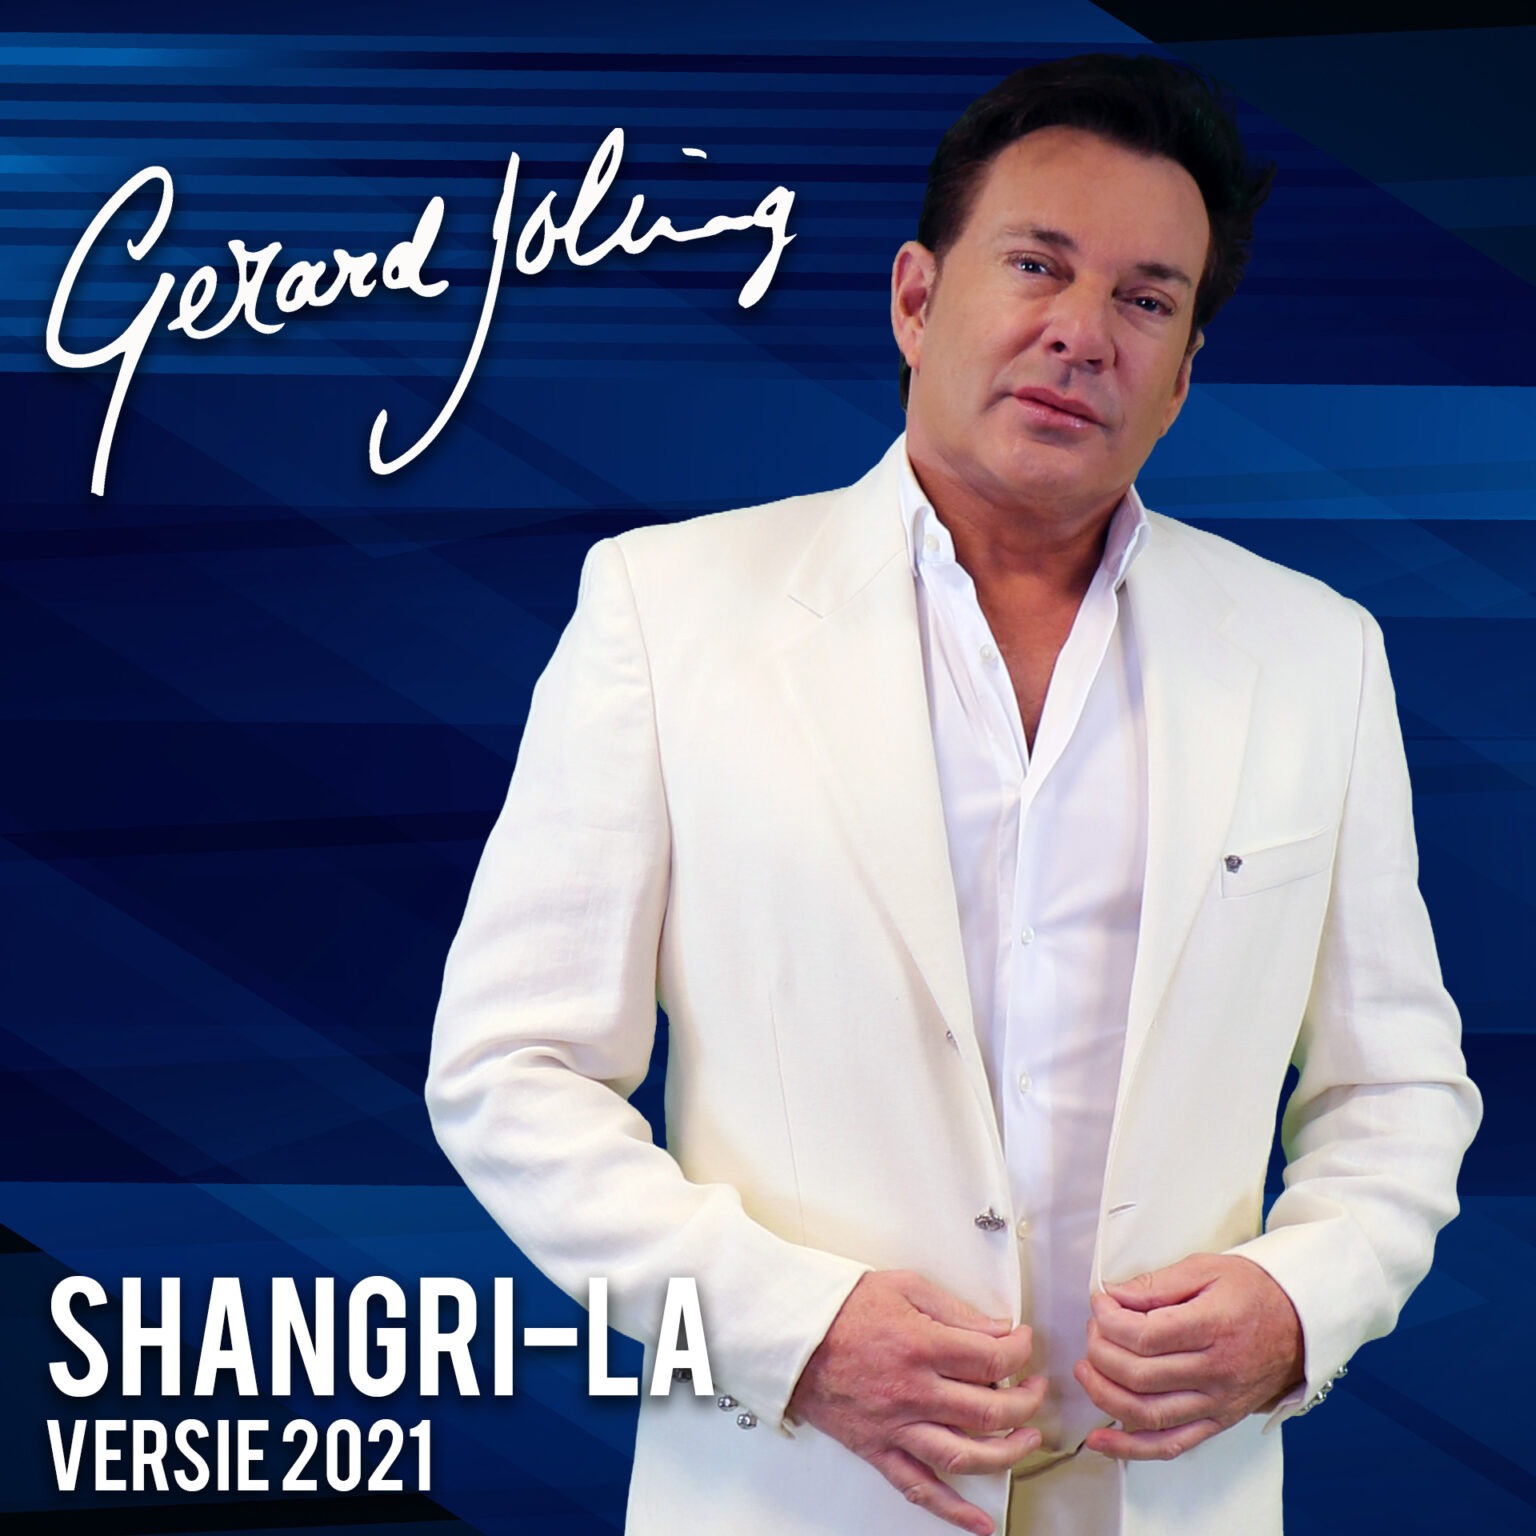 Gerard Joling - Shangri-La (Versie 2021)